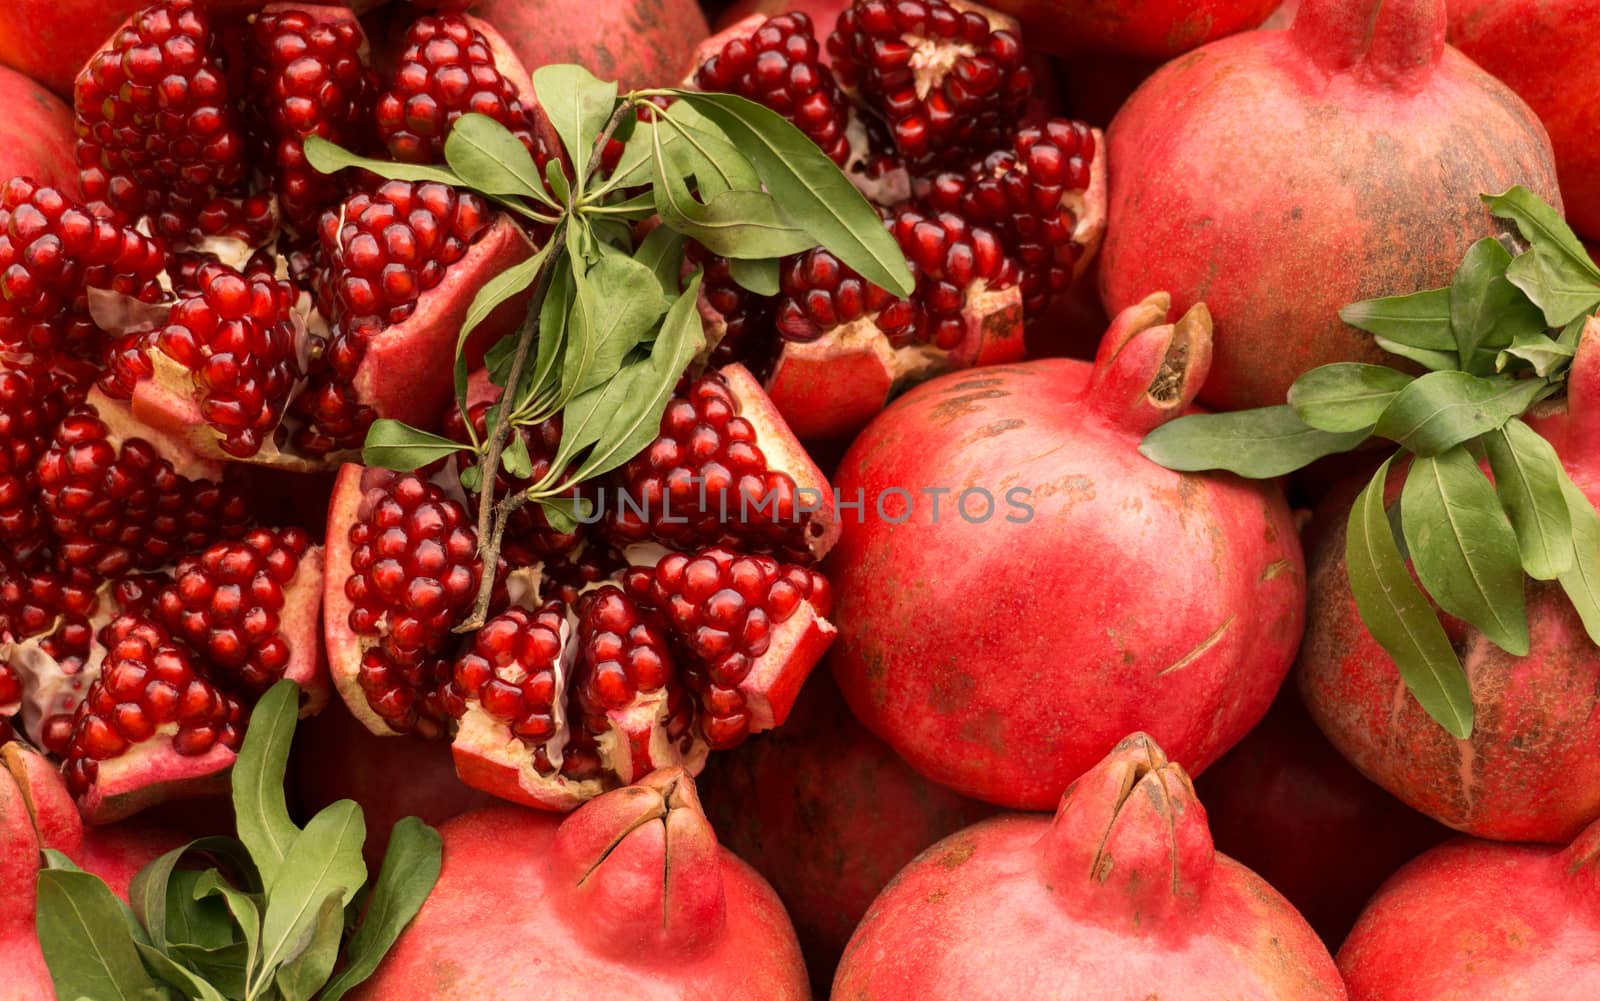 Ripe red pomegranates on the market. Cut pomegranates, herbs